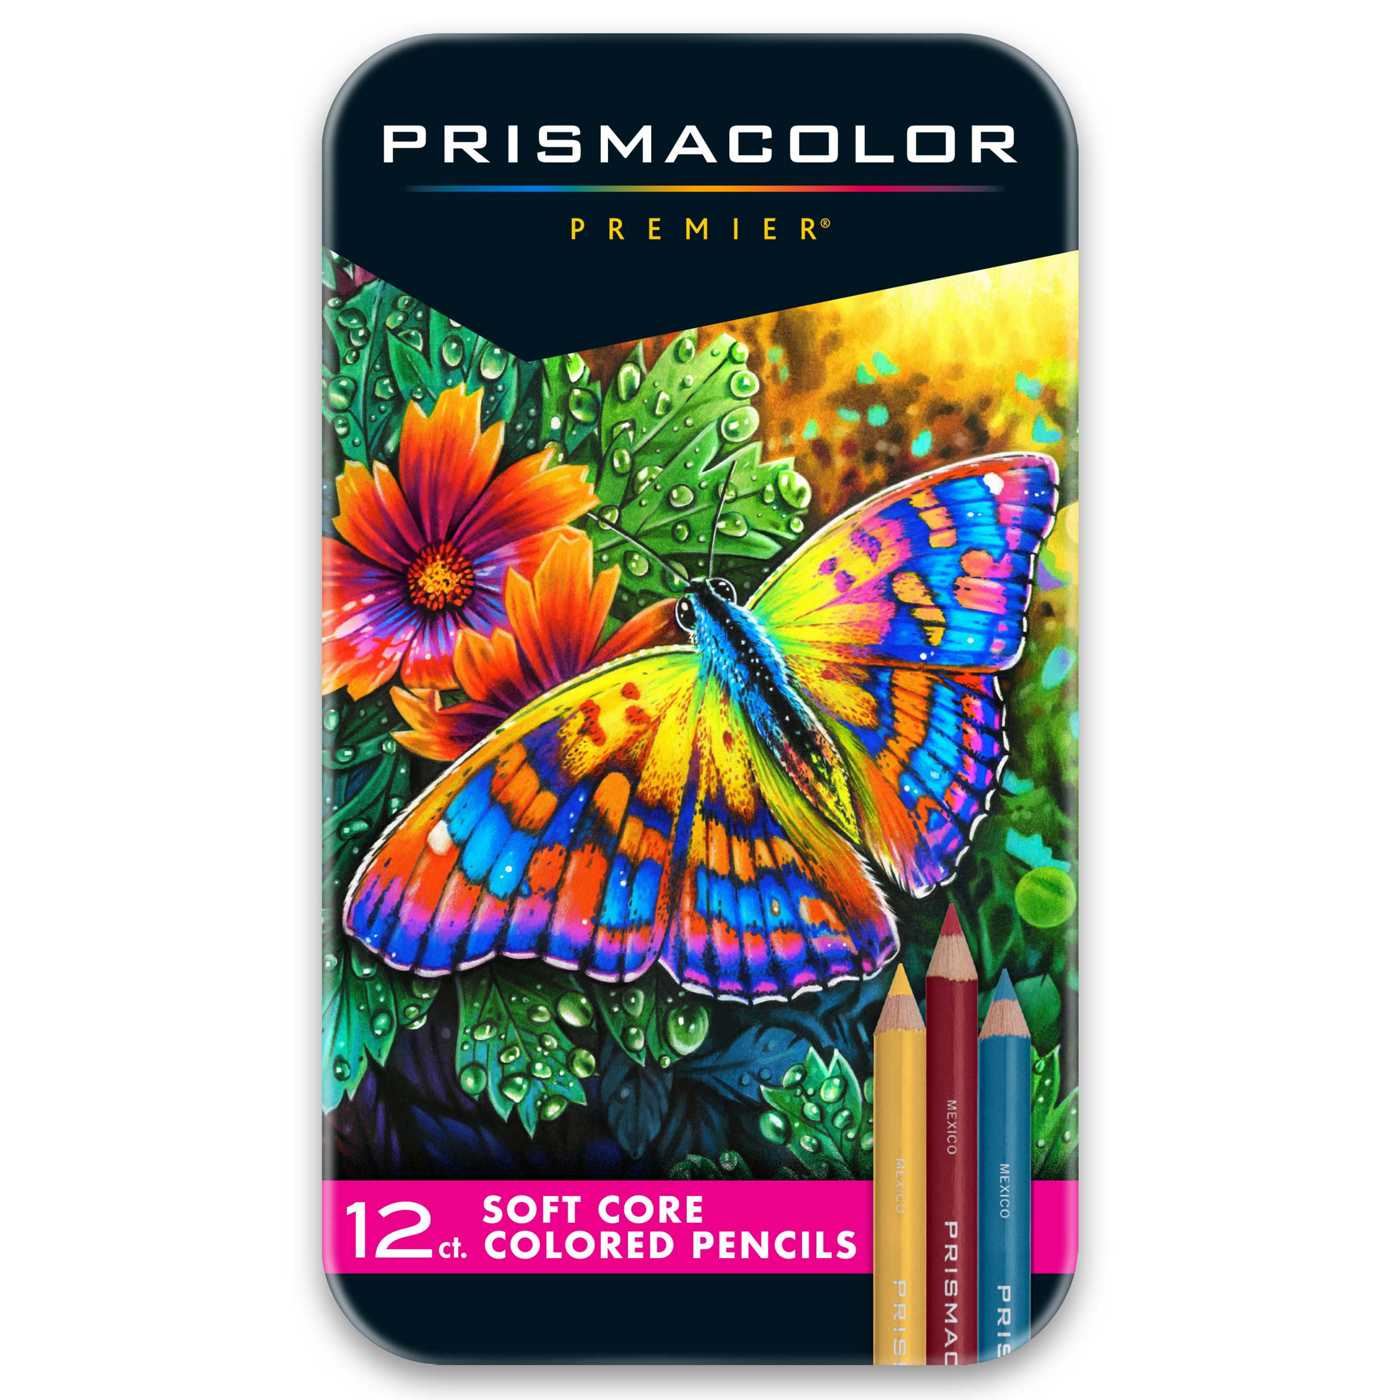 Prismacolor Premier Soft Core Colored Pencils; image 1 of 2